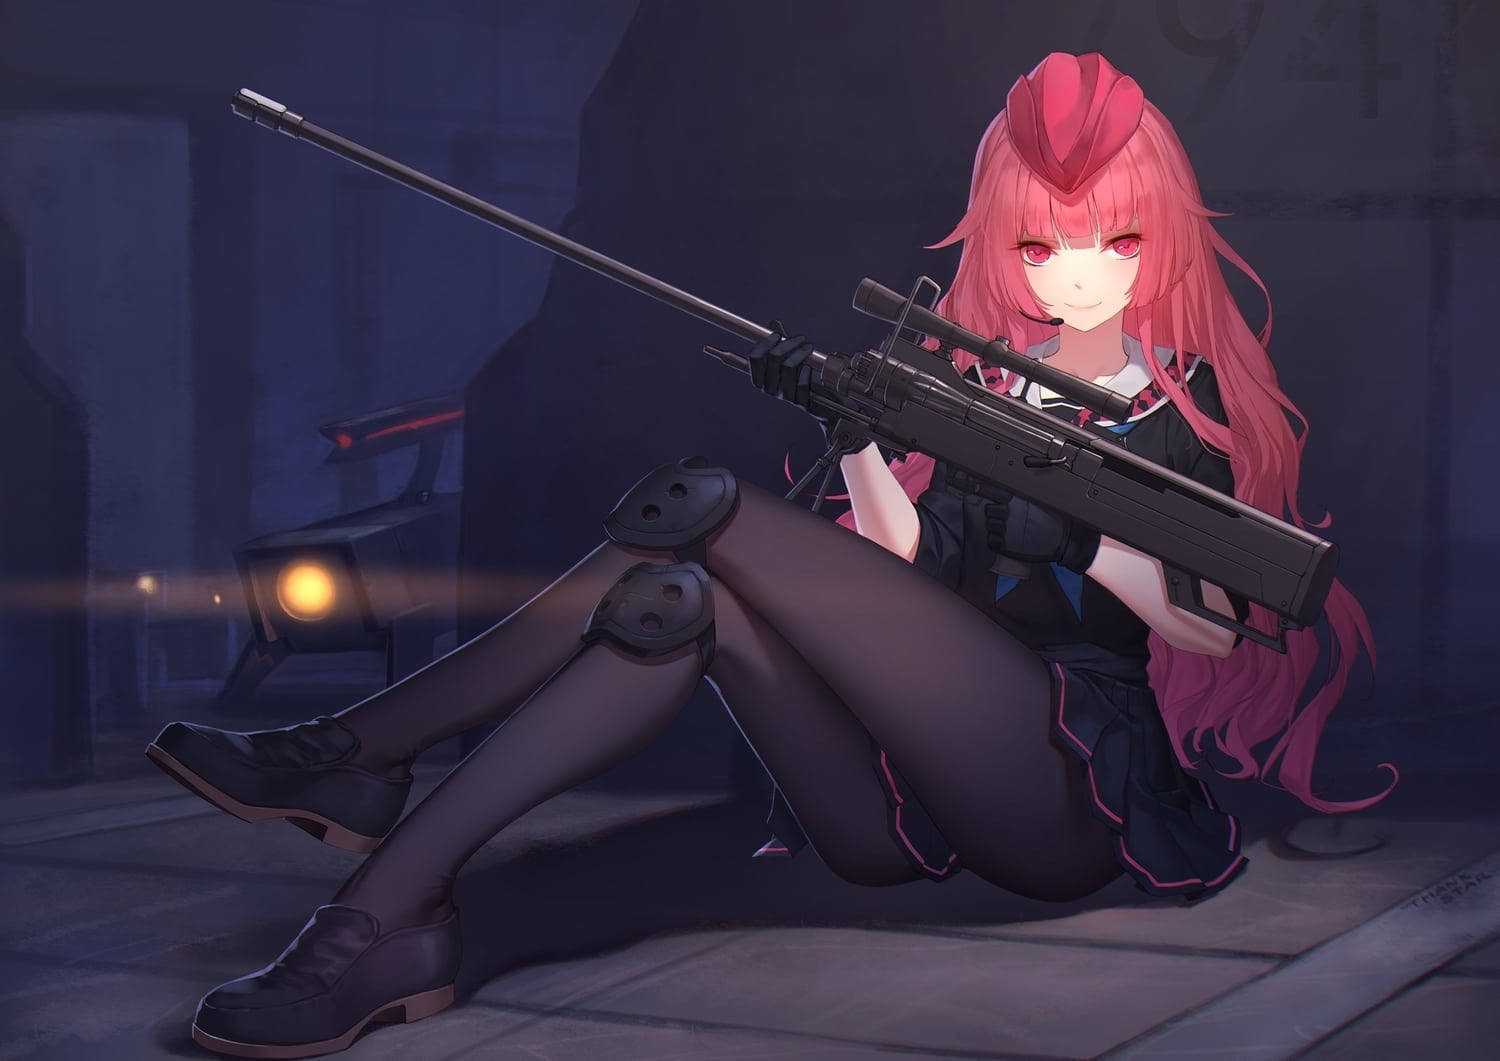 Bad Girl Anime Sniper Rifle Wallpaper